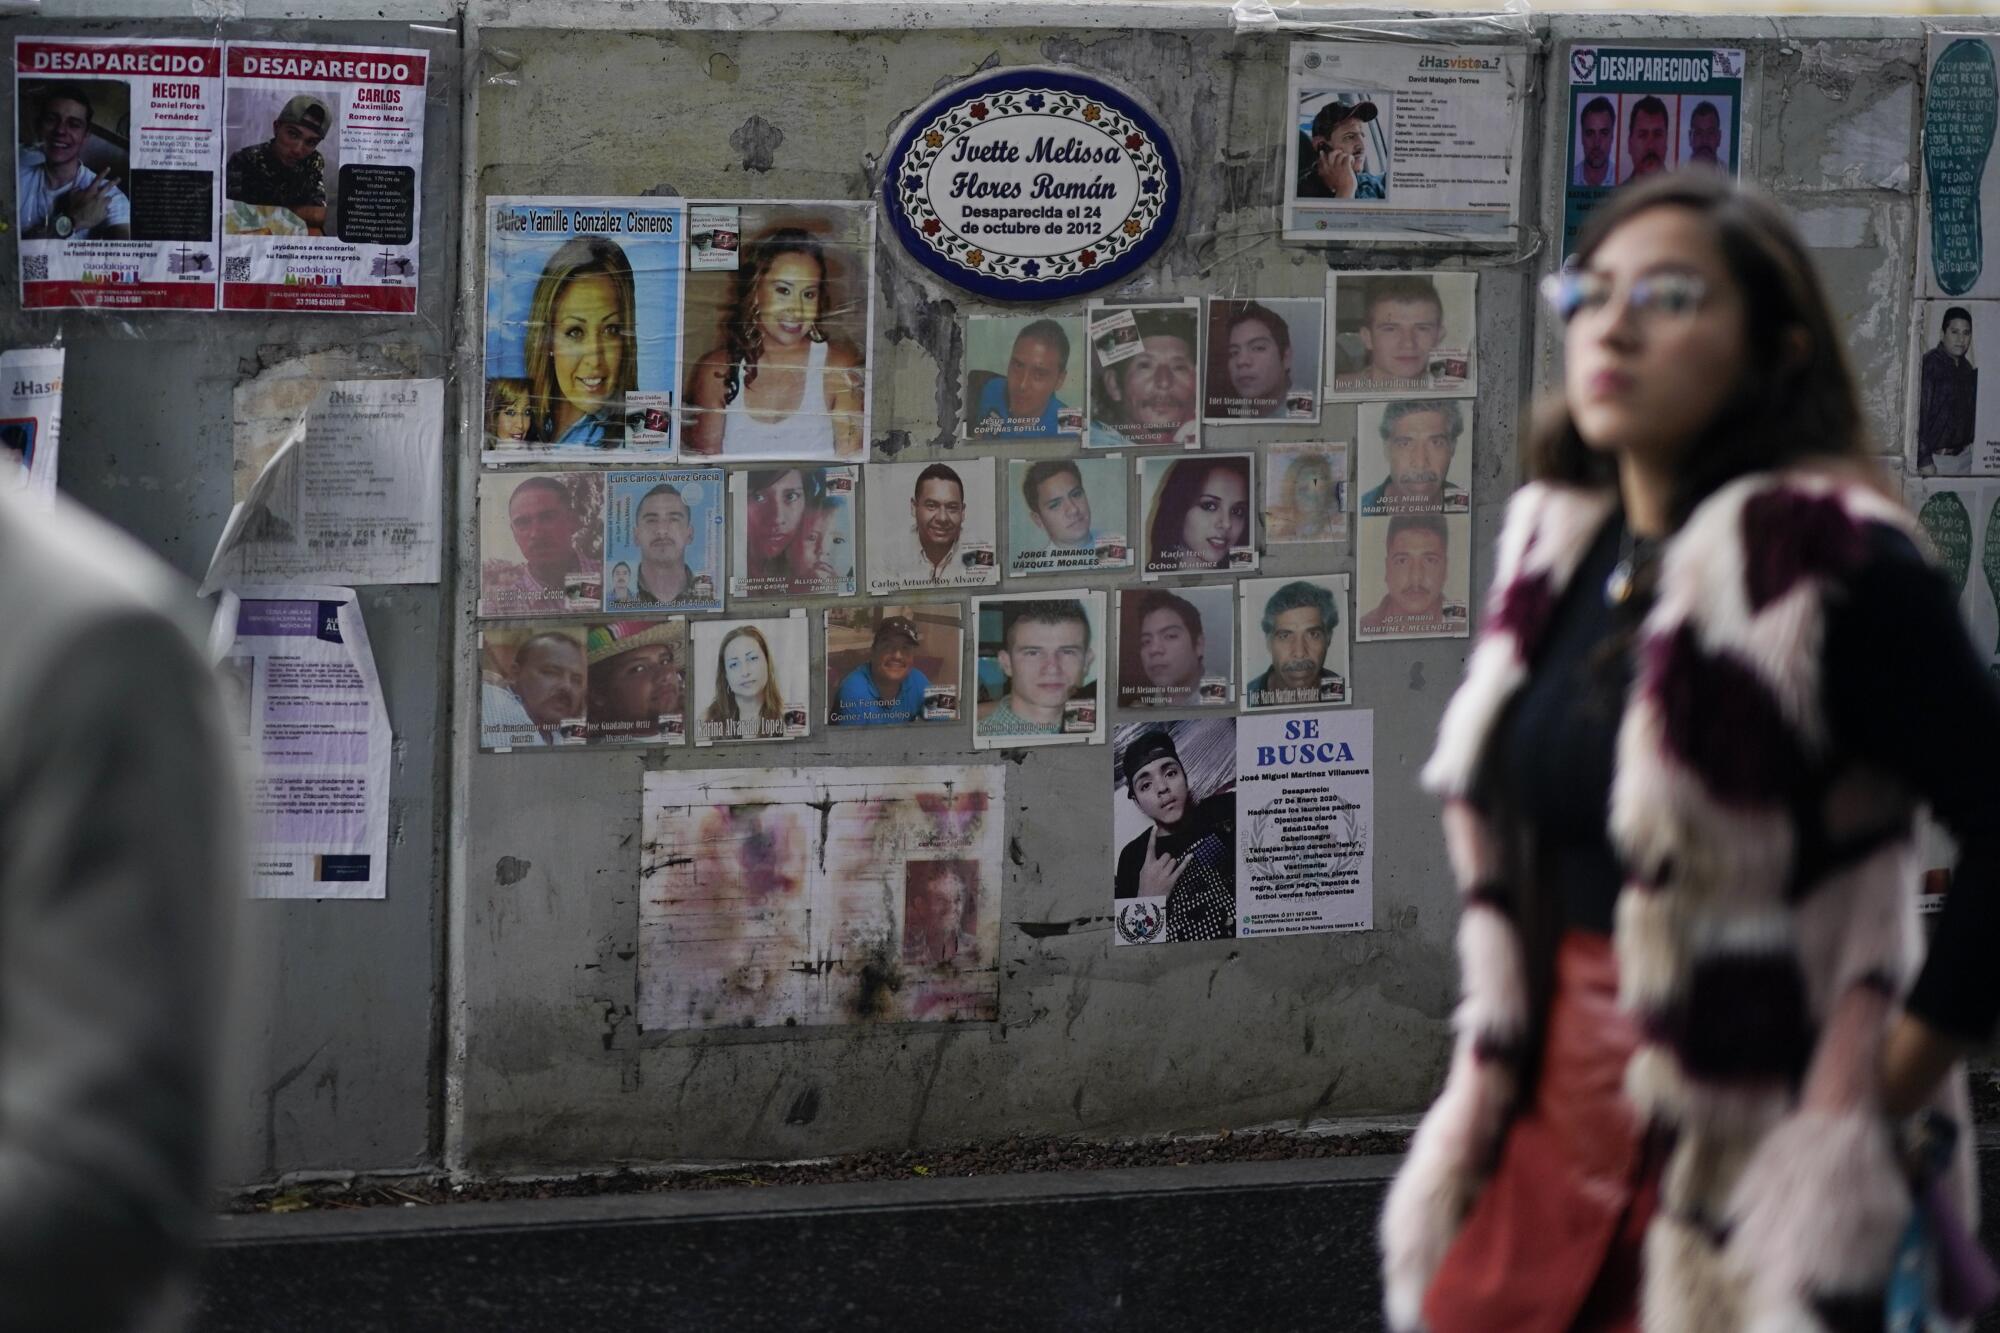 Eine Frau mit dunklen Haaren und Brille geht an einer Wand entlang, an der Fotos einzelner Personen hängen 